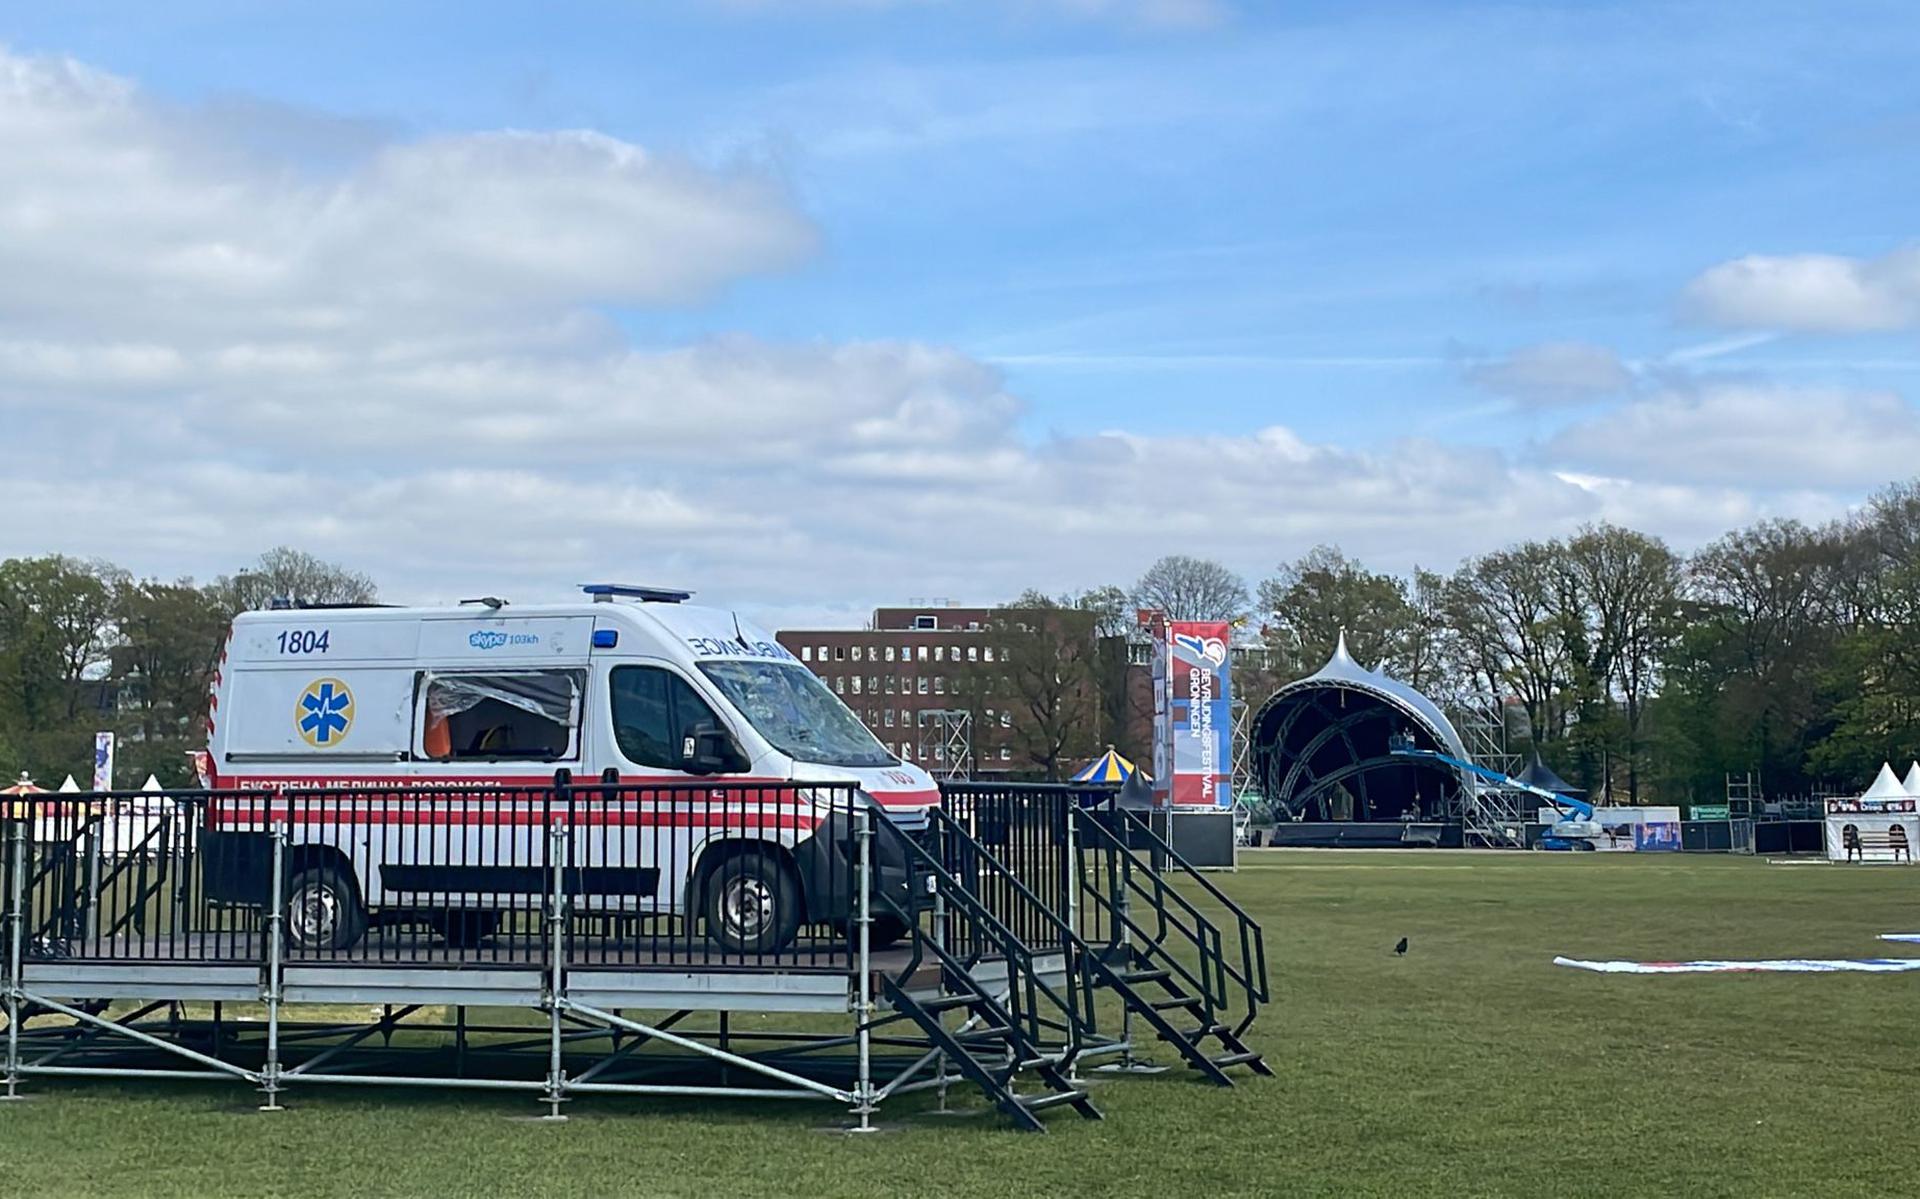 De ambulance op het terrein van Bevrijdingsfestival Groningen. Foto van Ebel Jan van Dijk